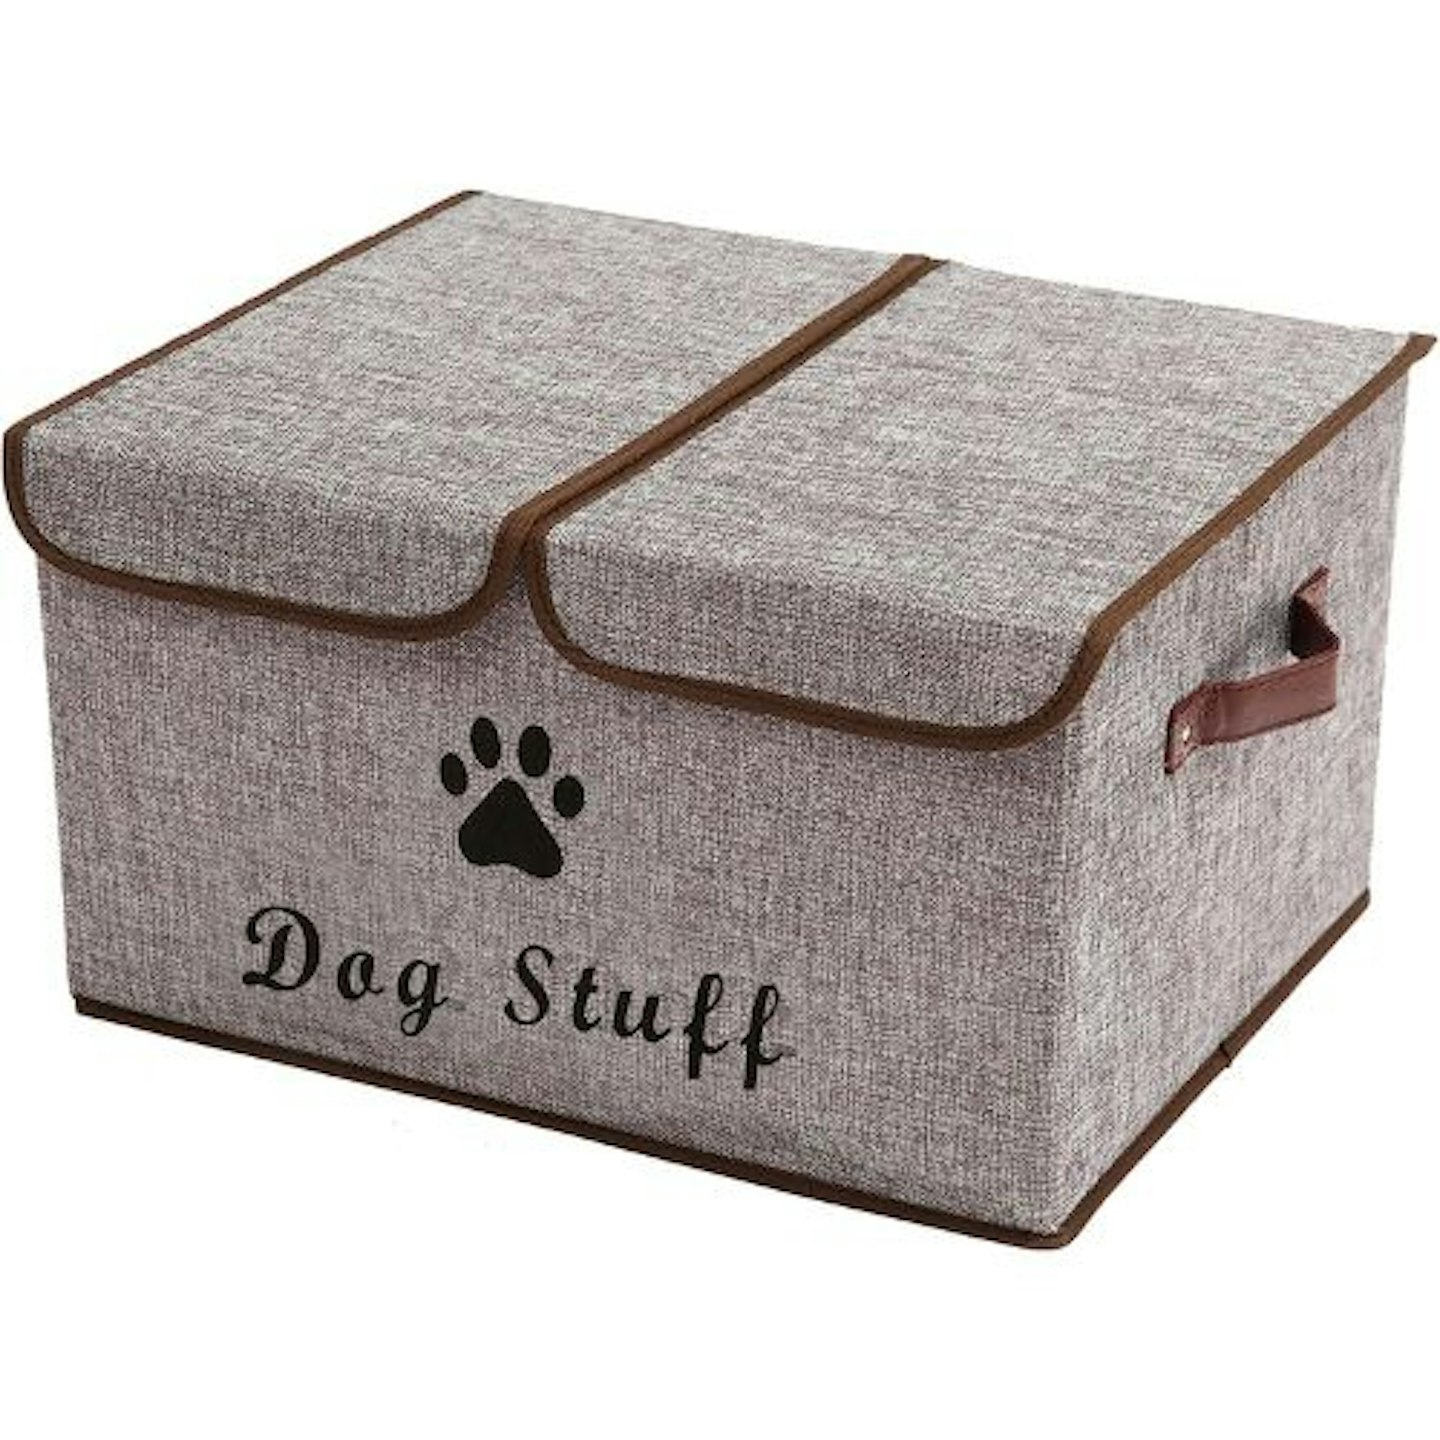 Morezi Large Dog Toy Storage Box